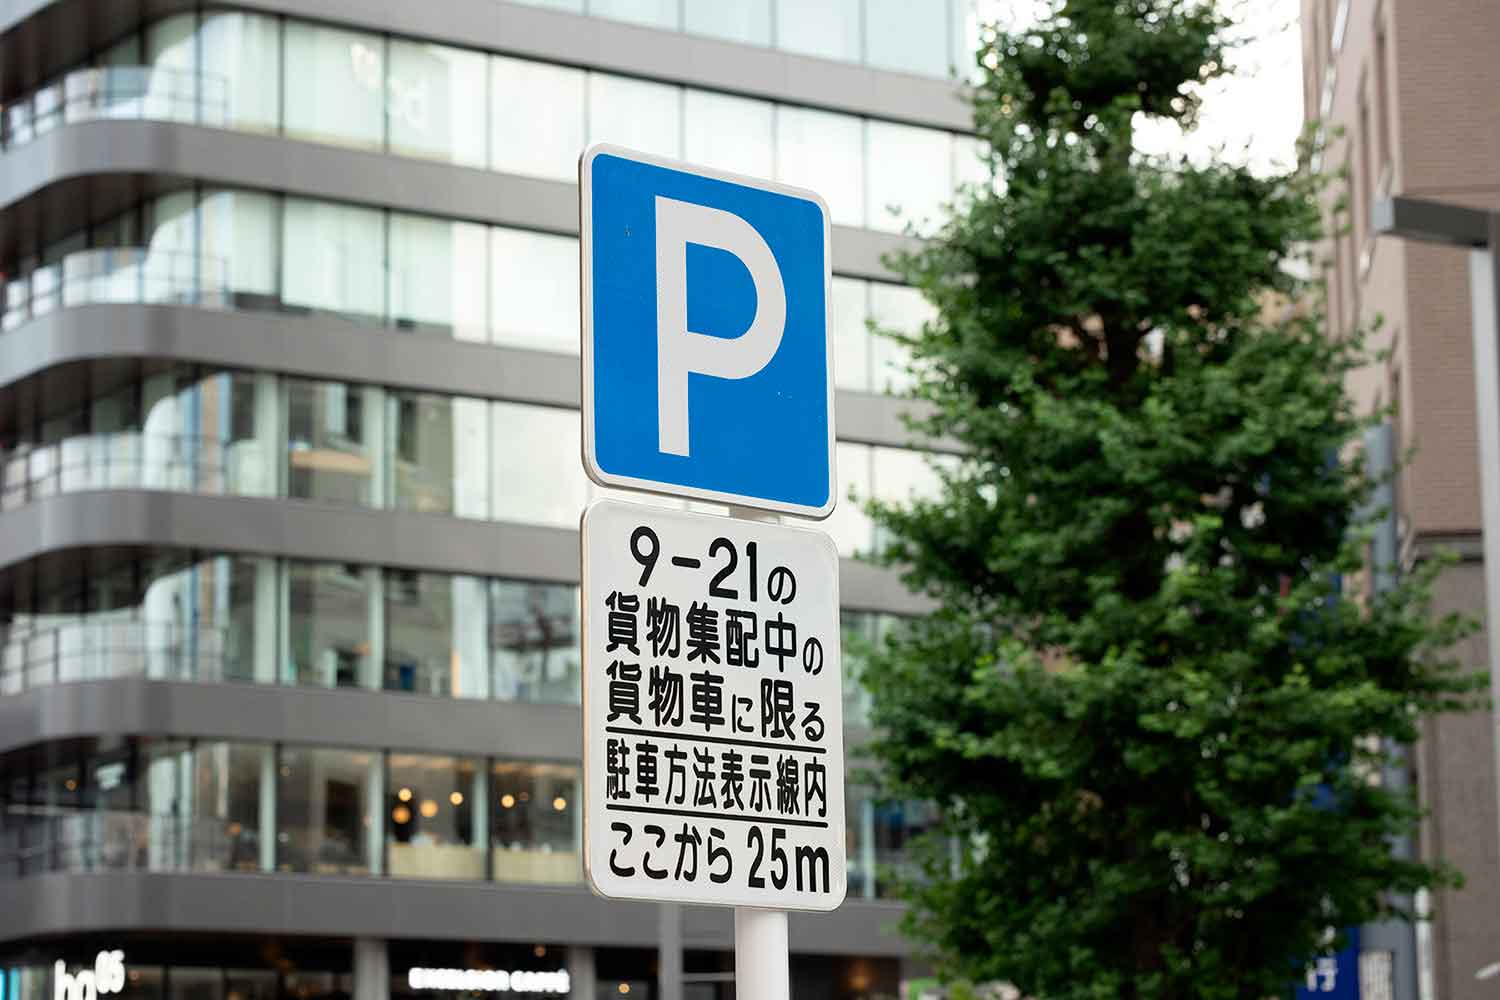 駐車可の標識